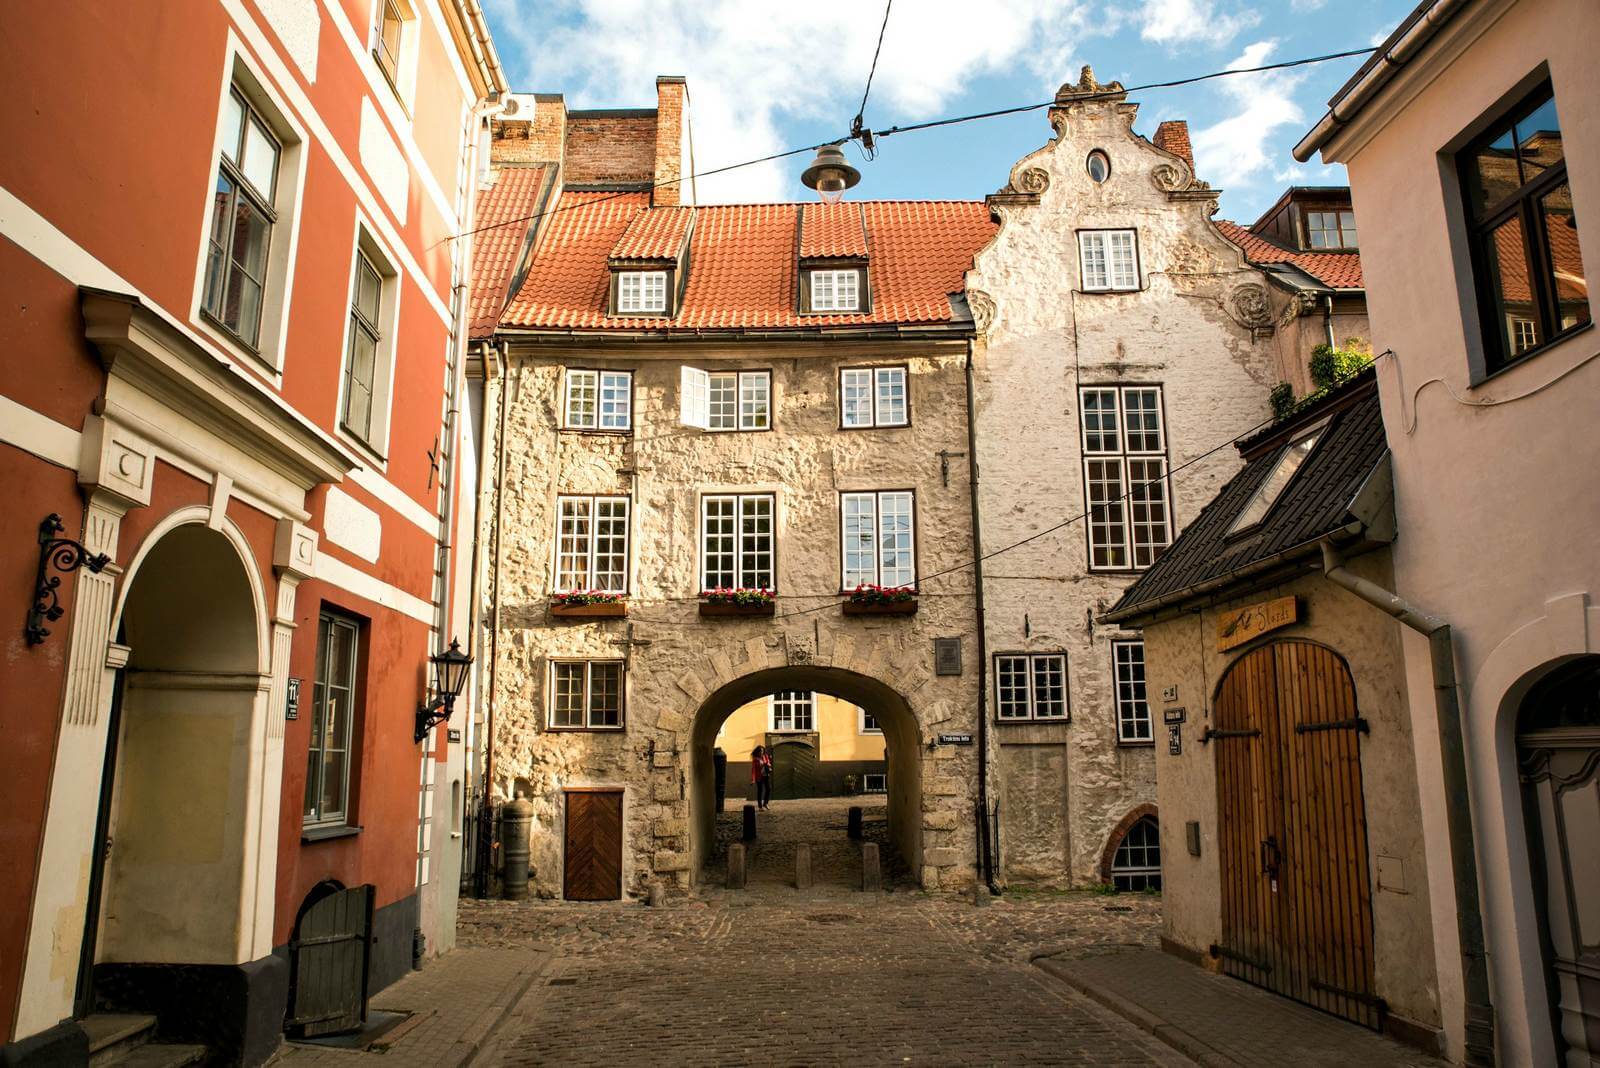 Foto: Schwedentor in der Altstadt von Riga - Bildrechte latvia.travel - Lupe Reisen